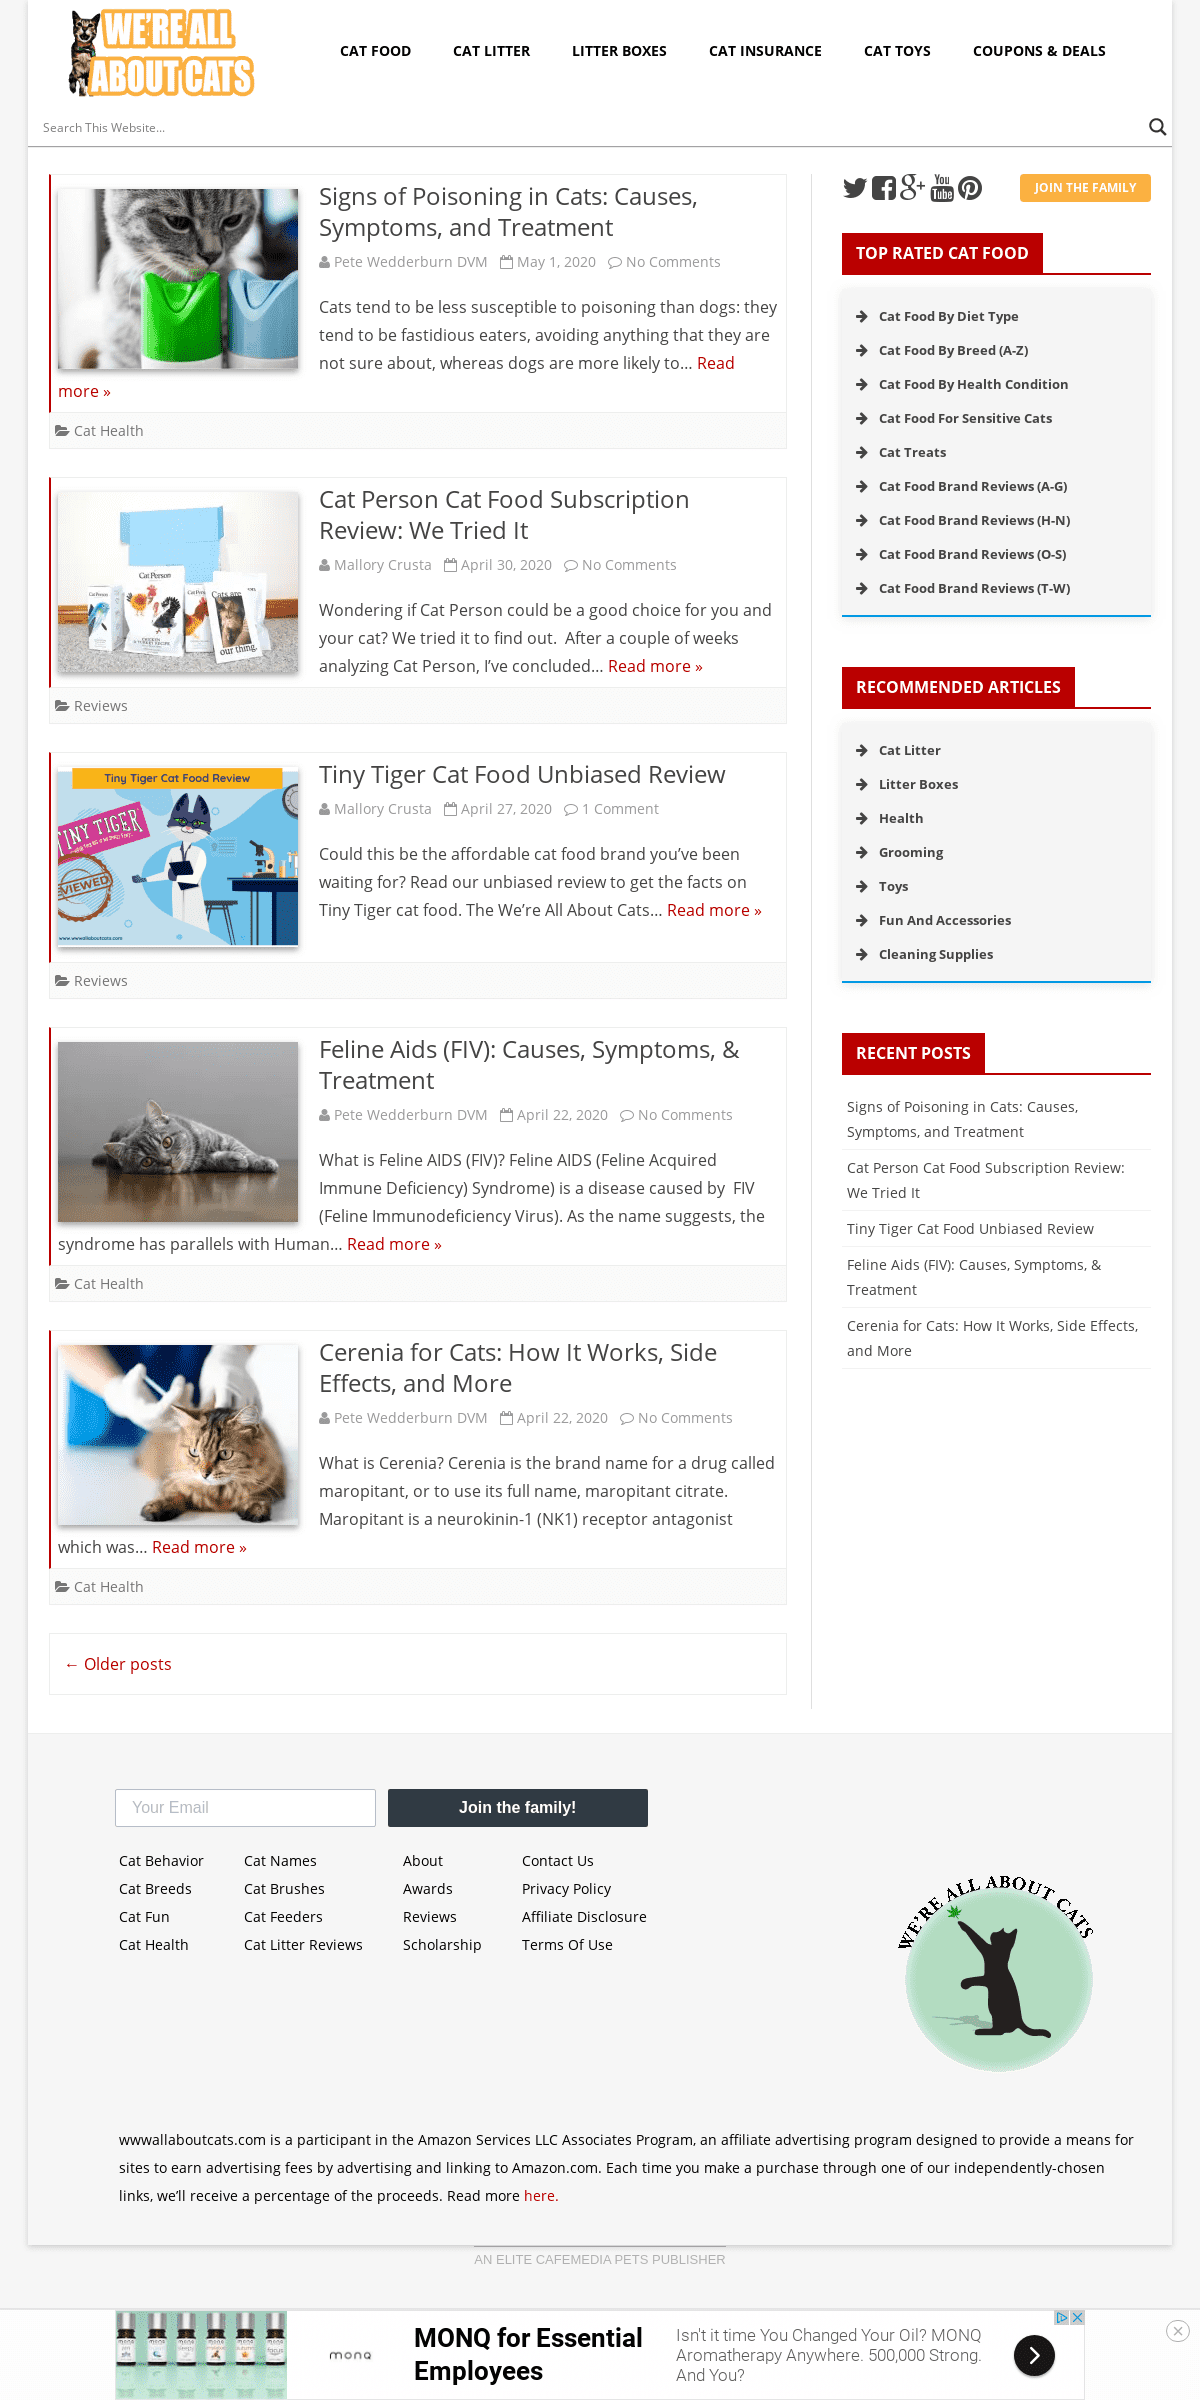 A complete backup of wwwallaboutcats.com